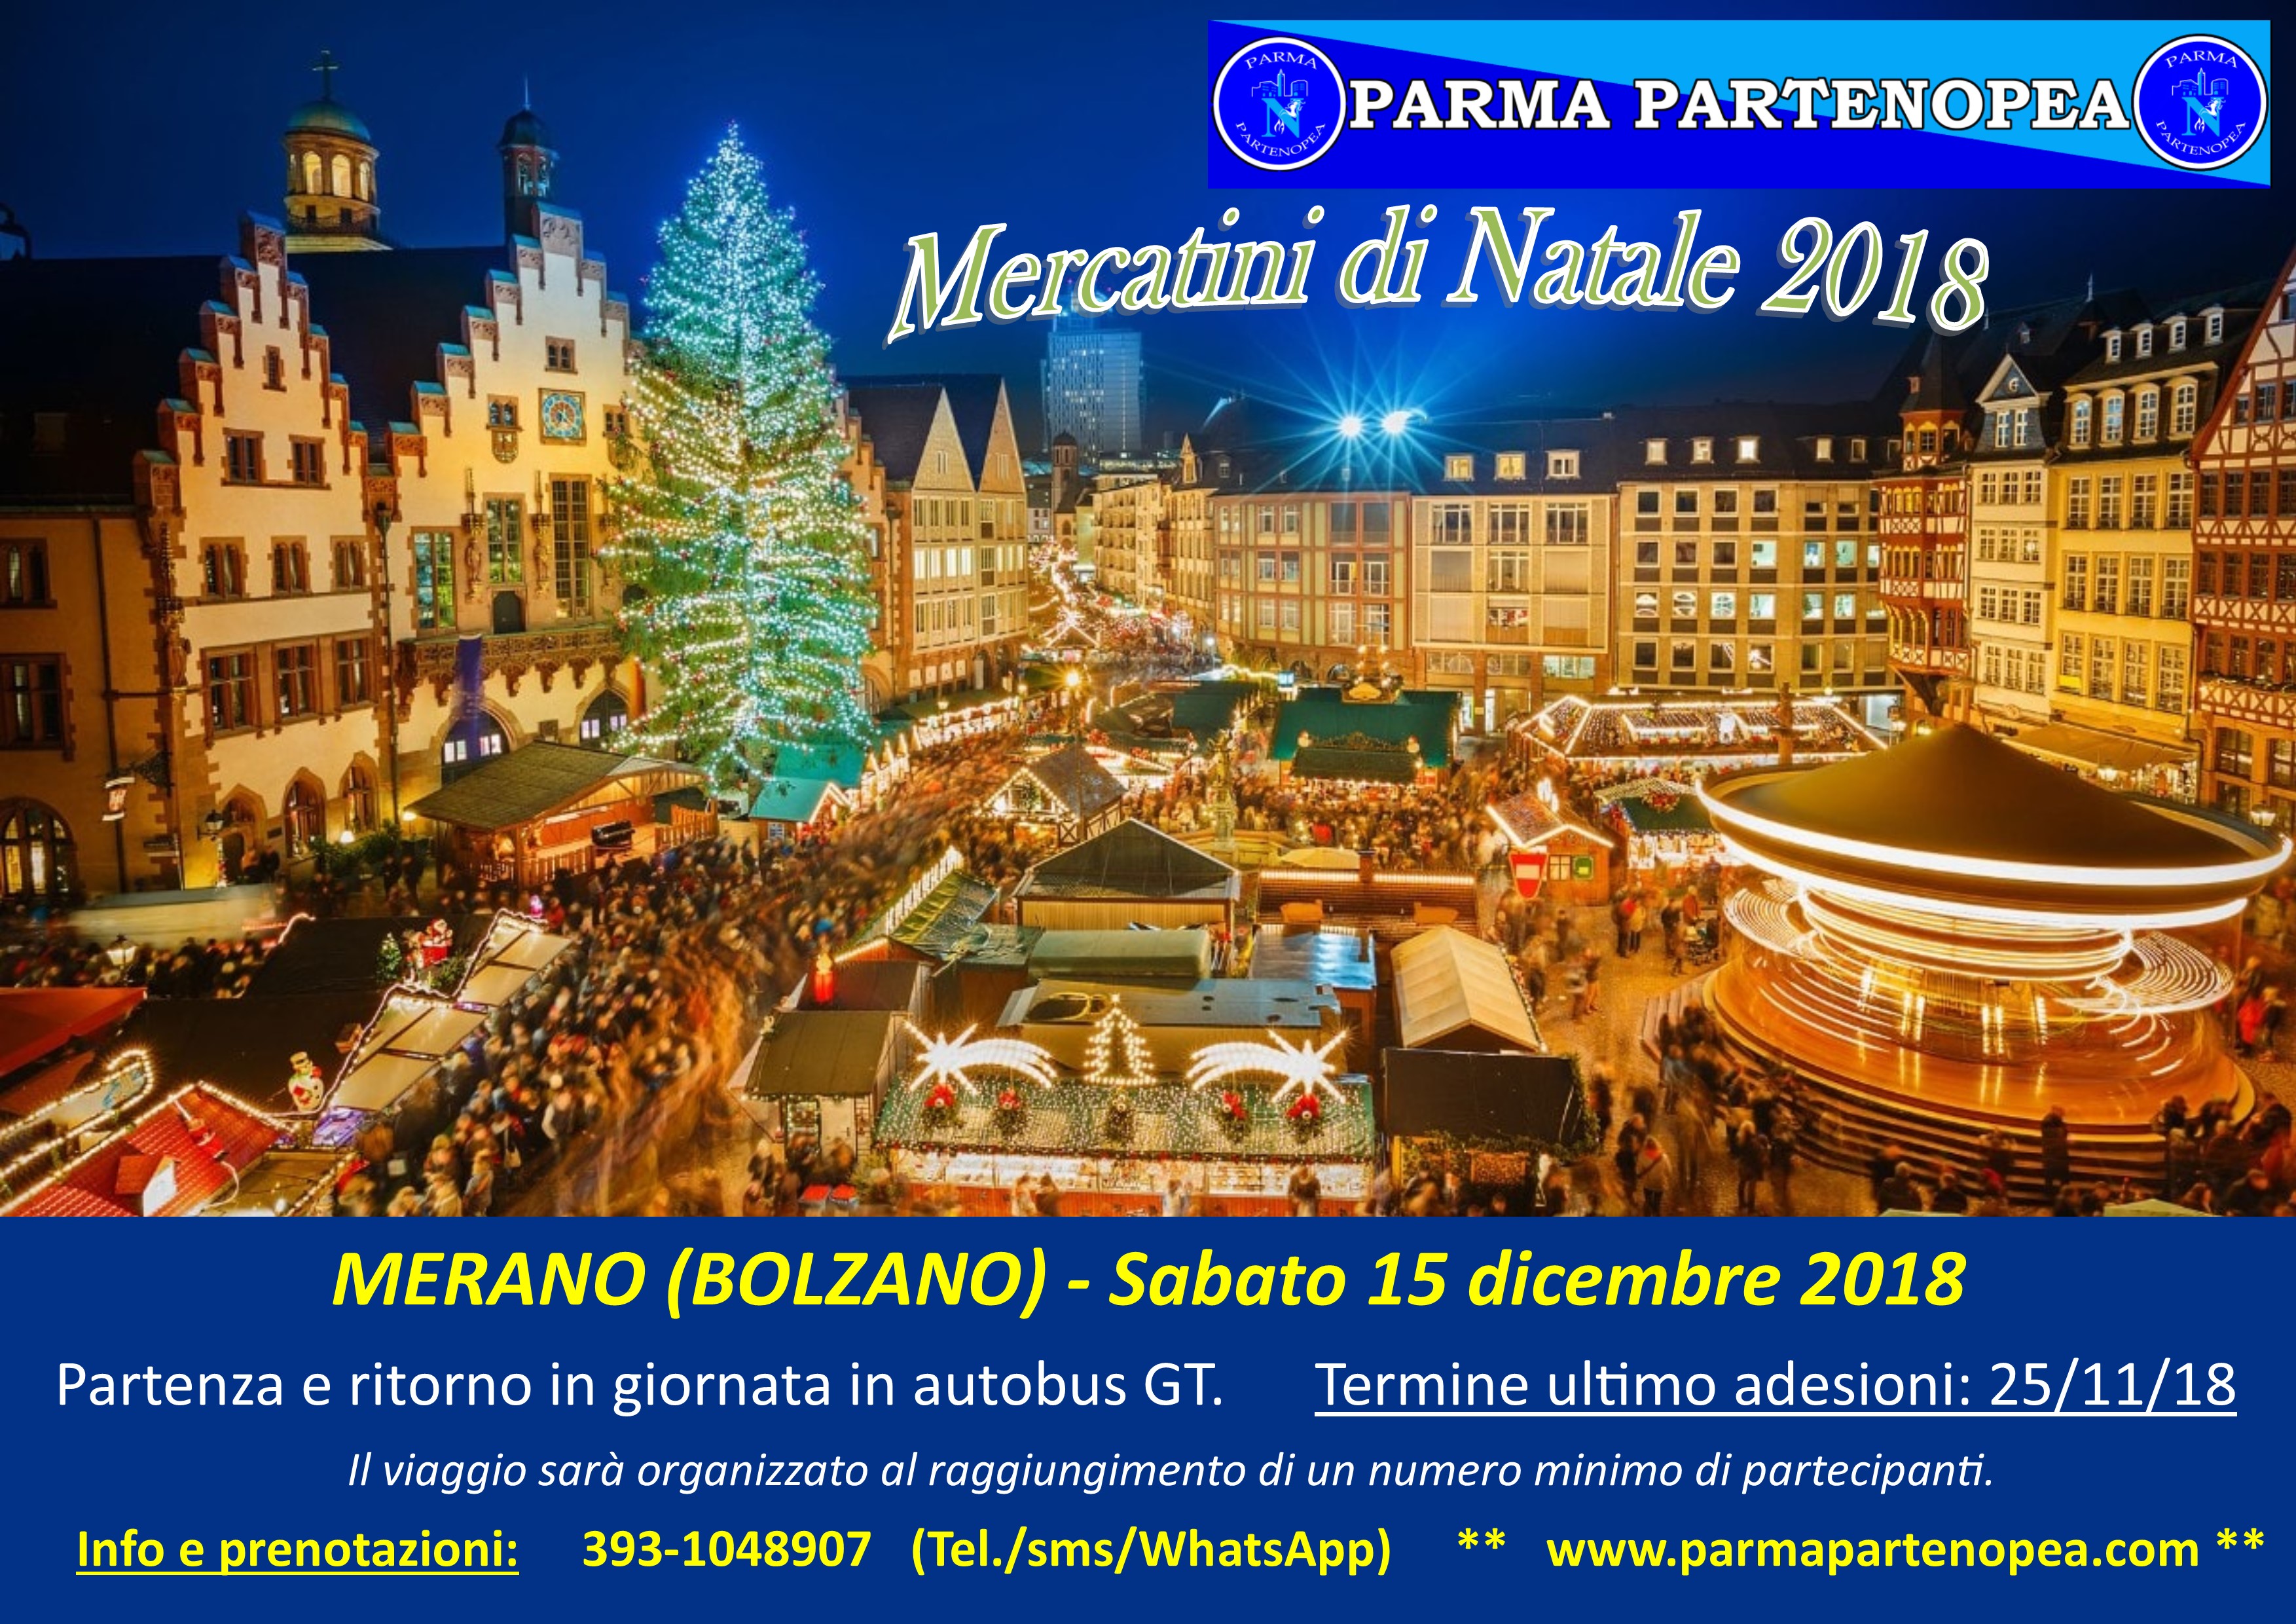 Merano Mercatini Di Natale Foto.Mercatini Di Natale 2018 A Merano Bolzano Con Parma Partenopea Sabato 15 Dicembre 2018 Parma Partenopea